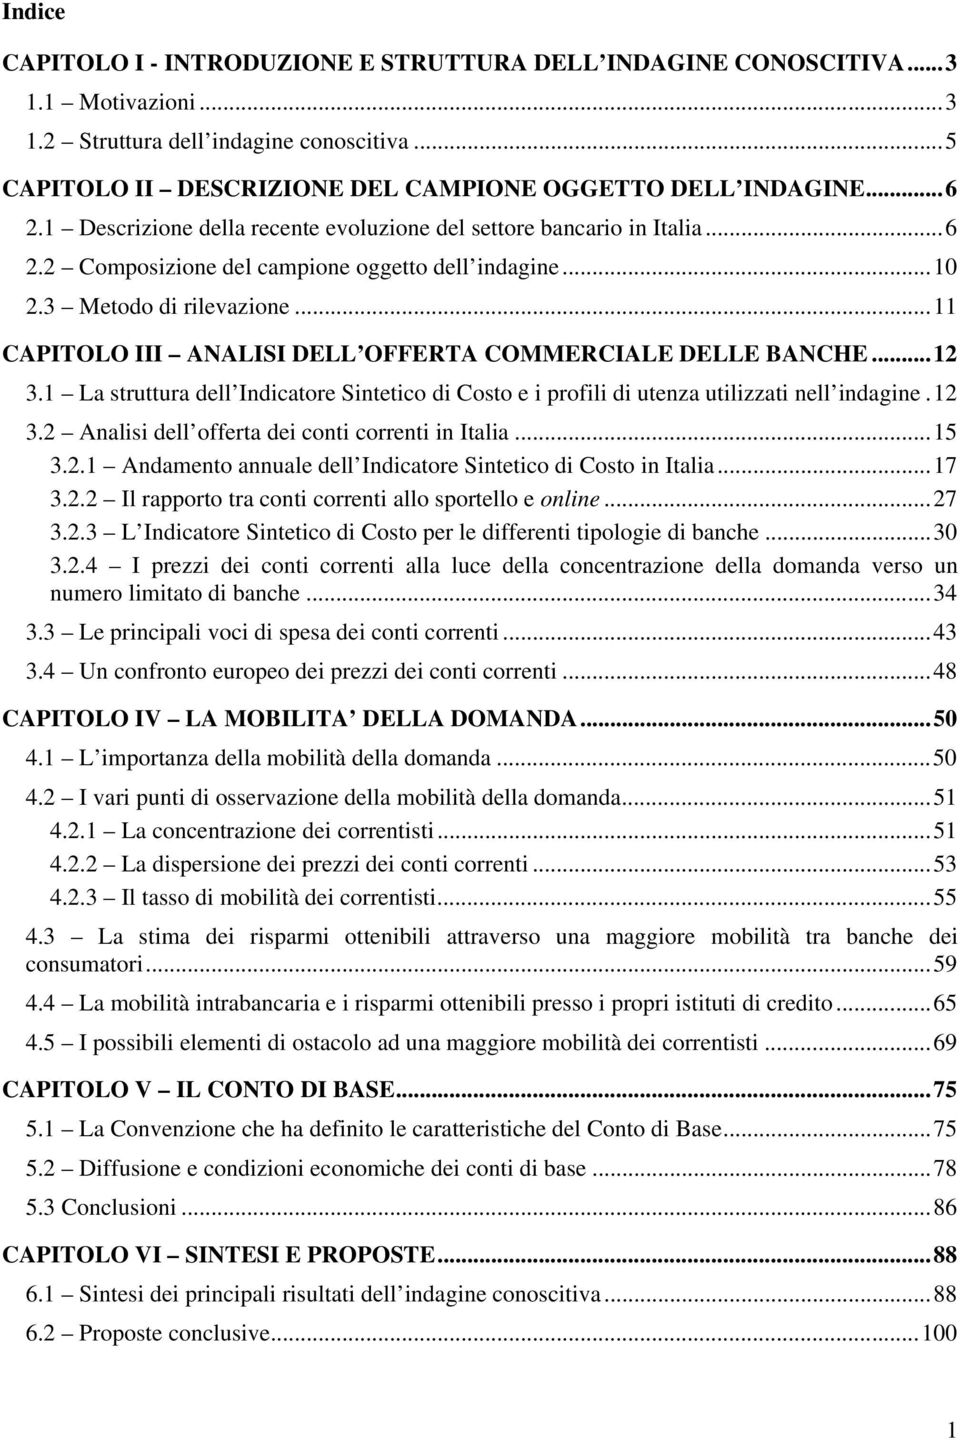 .. 11 CAPITOLO III ANALISI DELL OFFERTA COMMERCIALE DELLE BANCHE... 12 3.1 La struttura dell Indicatore Sintetico di Costo e i profili di utenza utilizzati nell indagine. 12 3.2 Analisi dell offerta dei conti correnti in Italia.